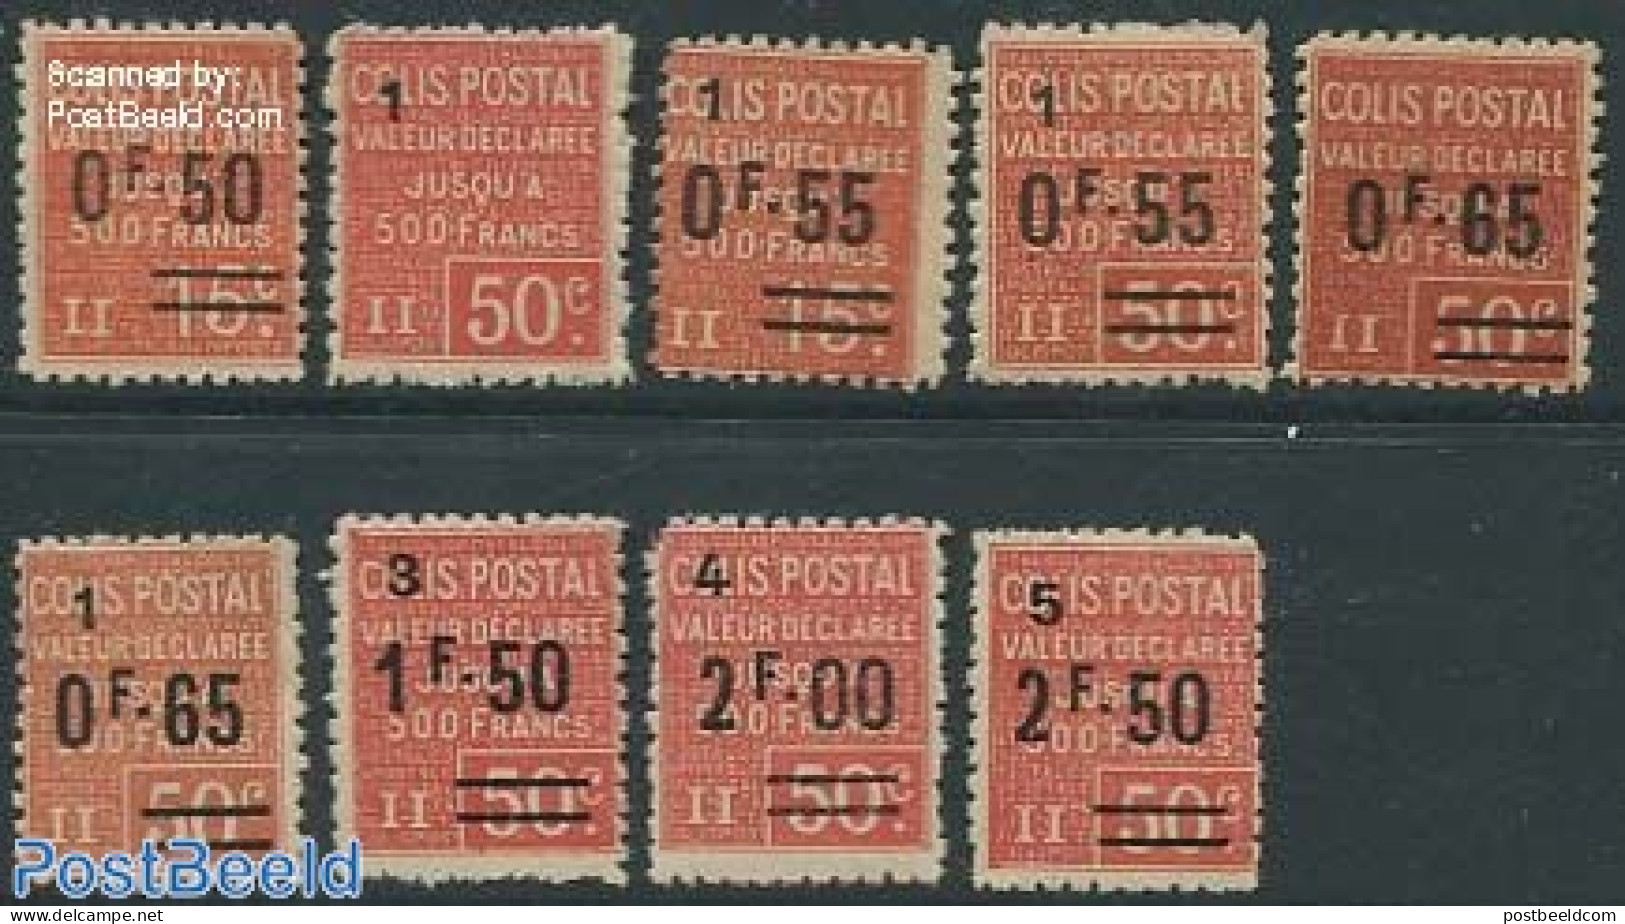 France 1926 Colis Postal 9v, Unused (hinged) - Nuovi